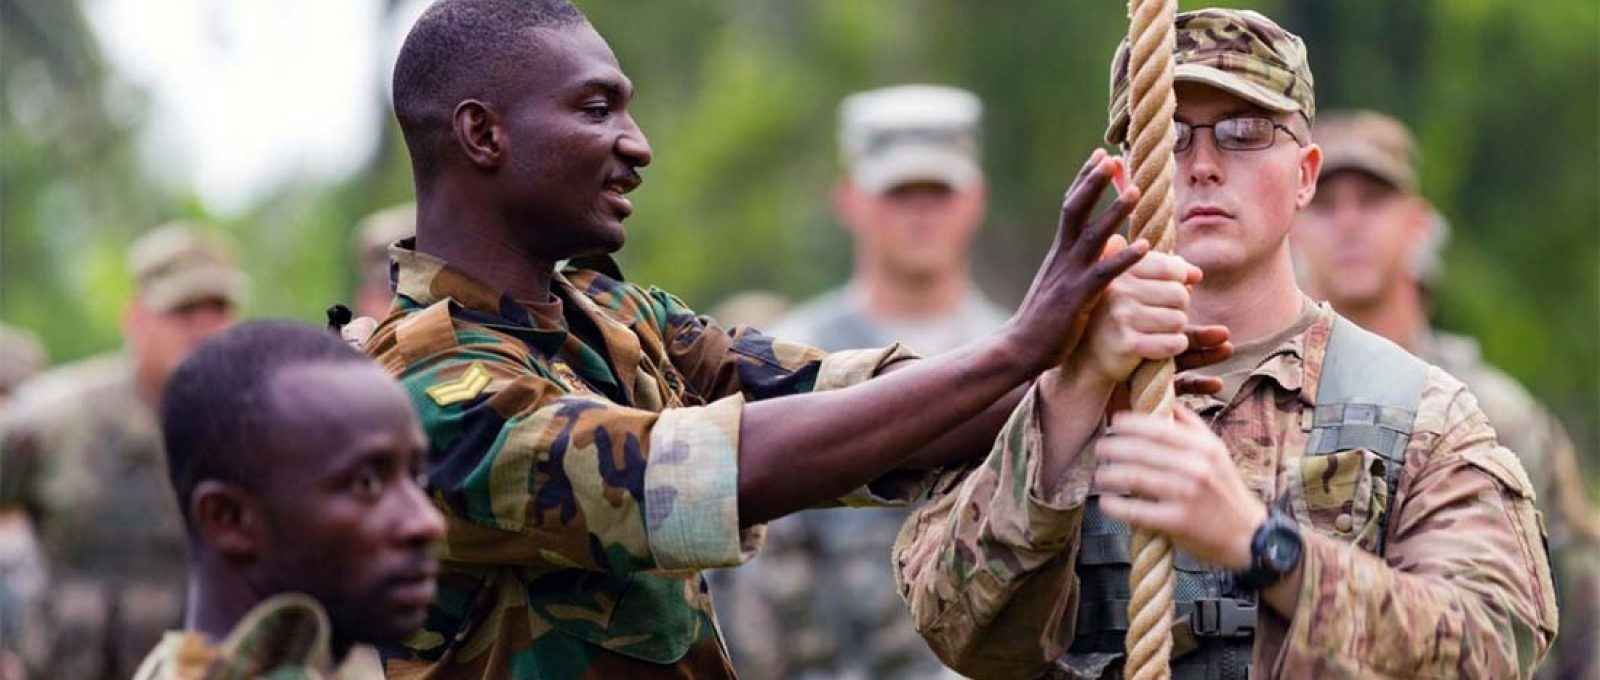 O cabo Kingsley Anyeala, do Exército de Gana, explica técnicas de escalada ao soldado Jake Burley, da 101ª Divisão Aerotransportada do Exército dos EUA na Jungle Warfare School em Akim Oda, Gana (U.S. Army).